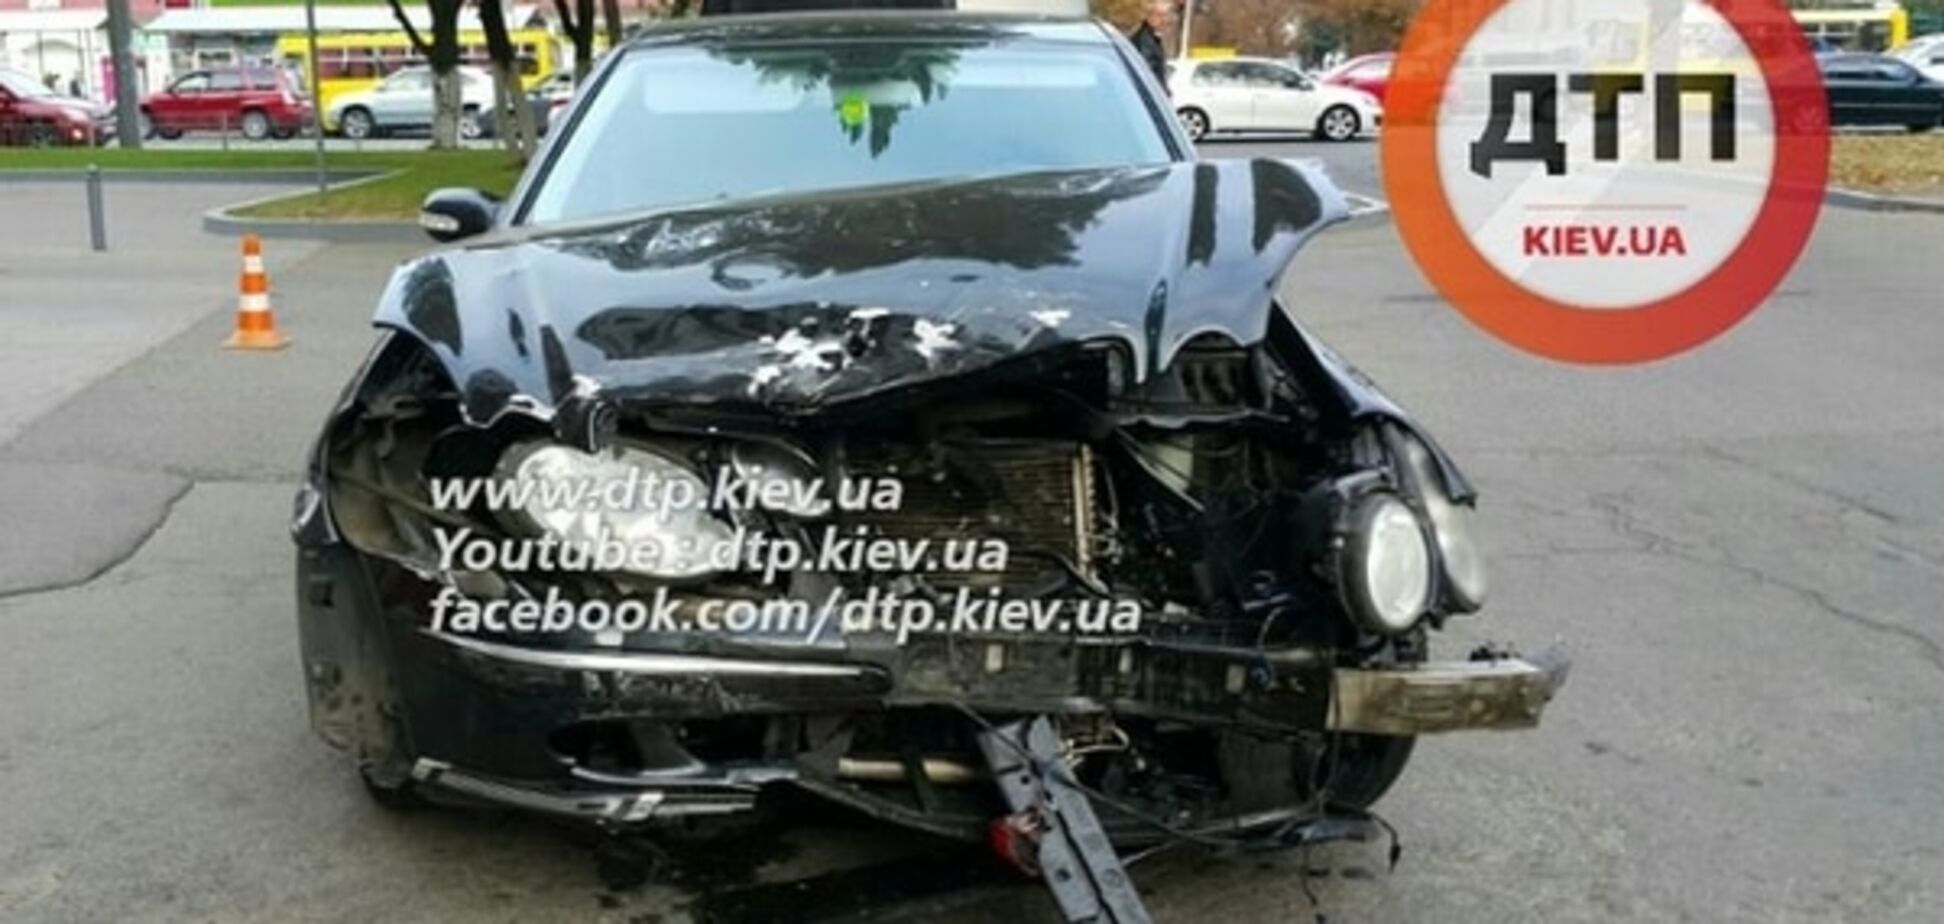 В Киеве утром столкнулись два автомобиля: есть пострадавшие